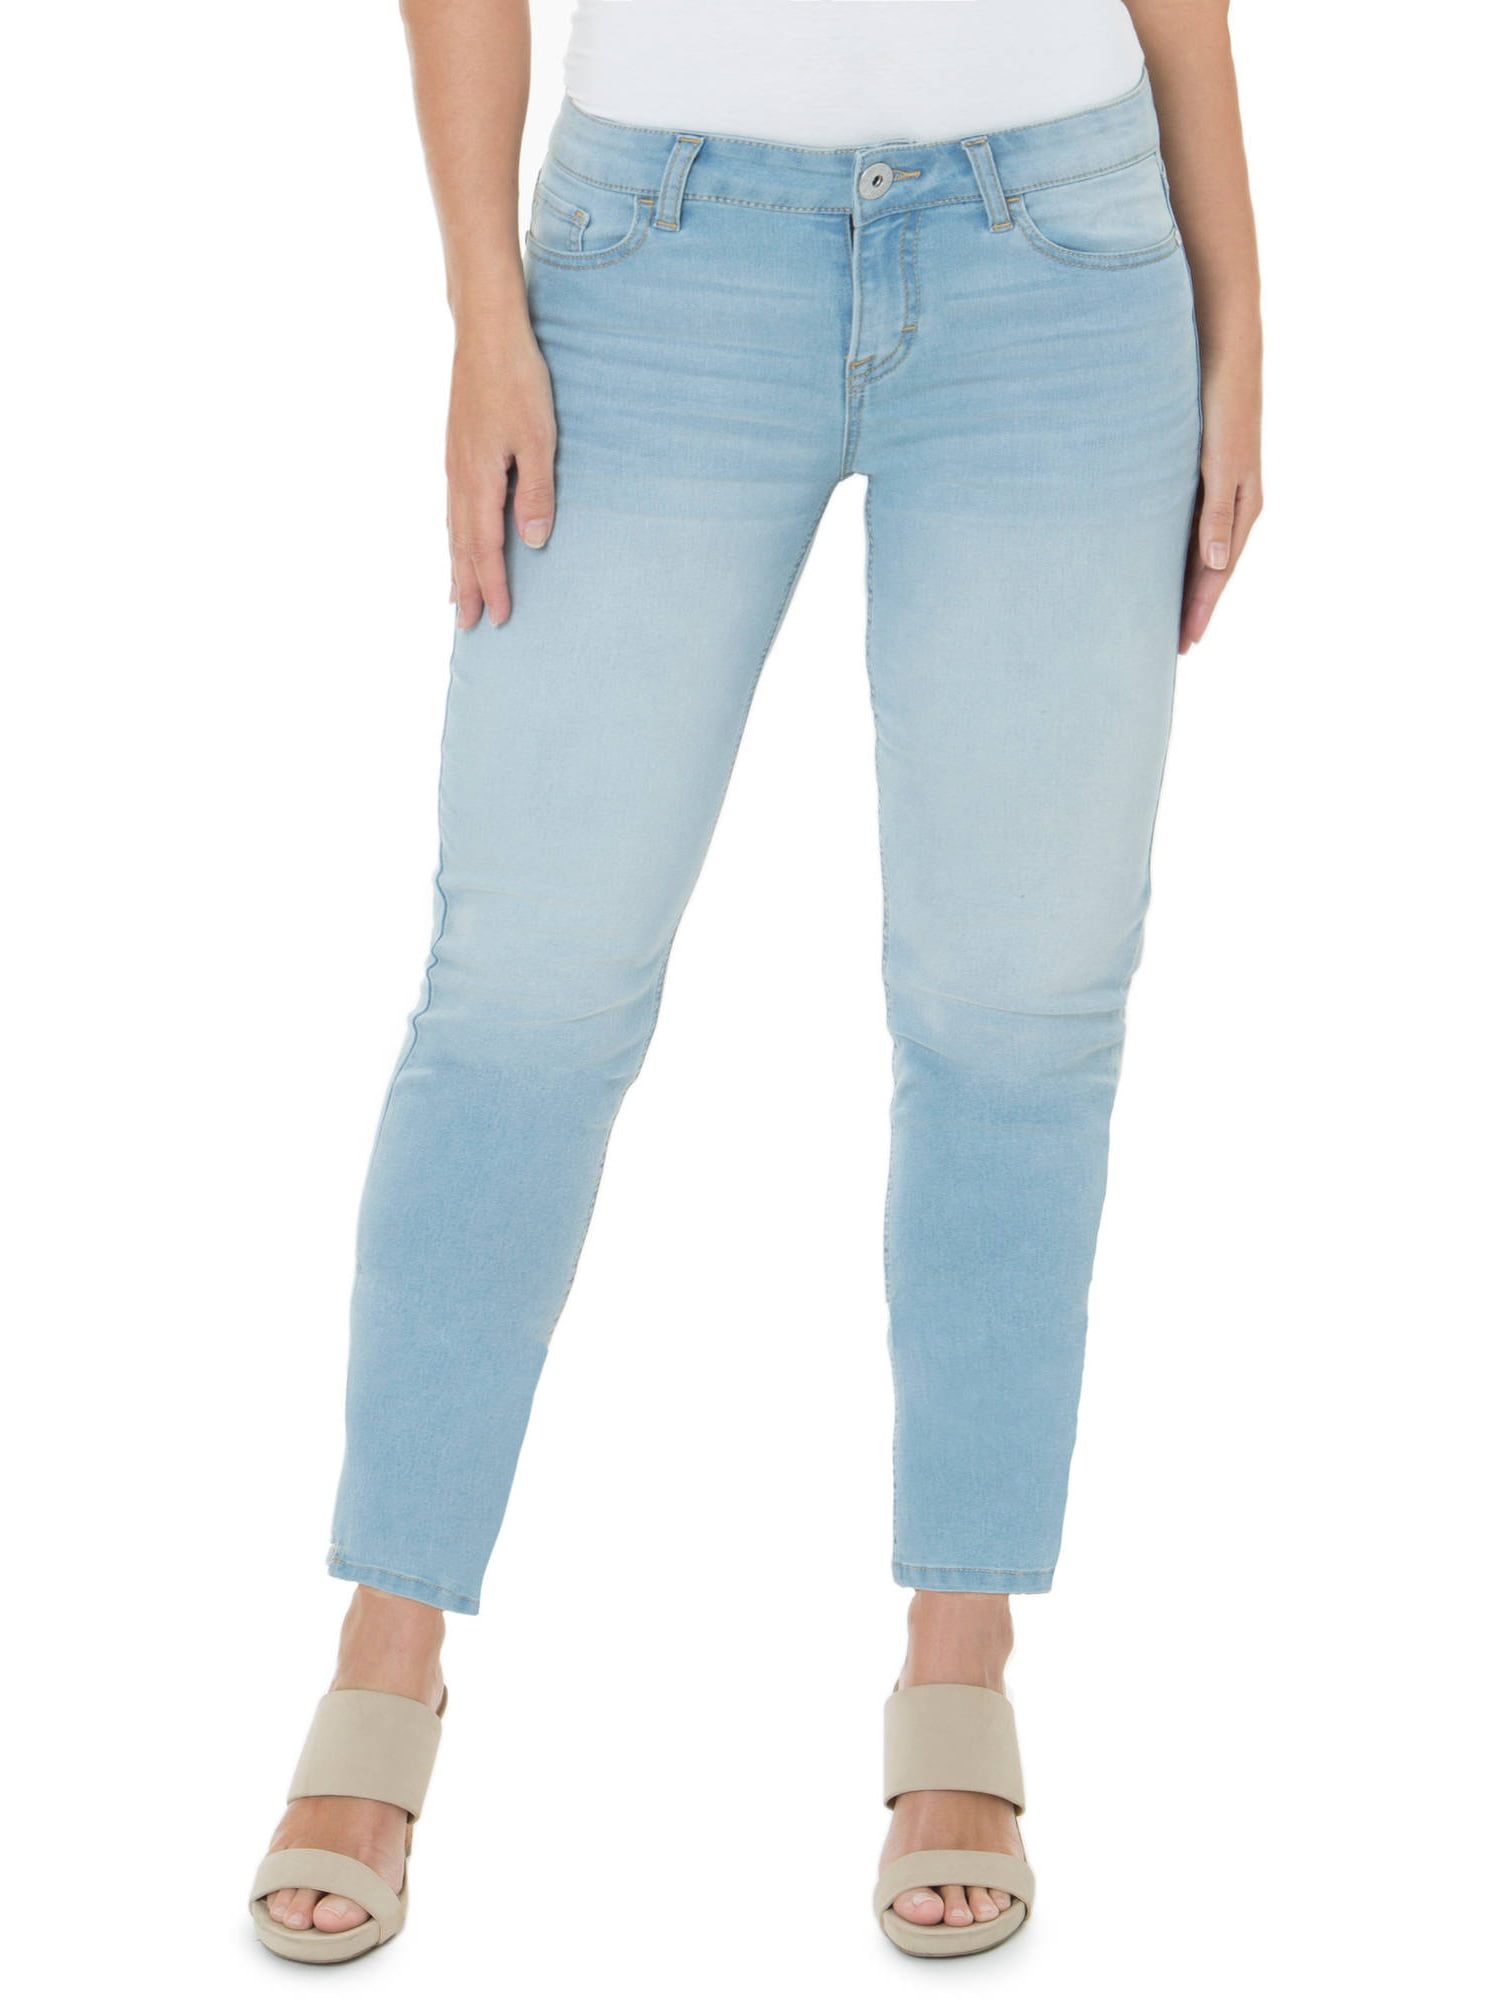 Jordache - Jordache Women's Plus-size Skinny Jeans - Walmart.com ...